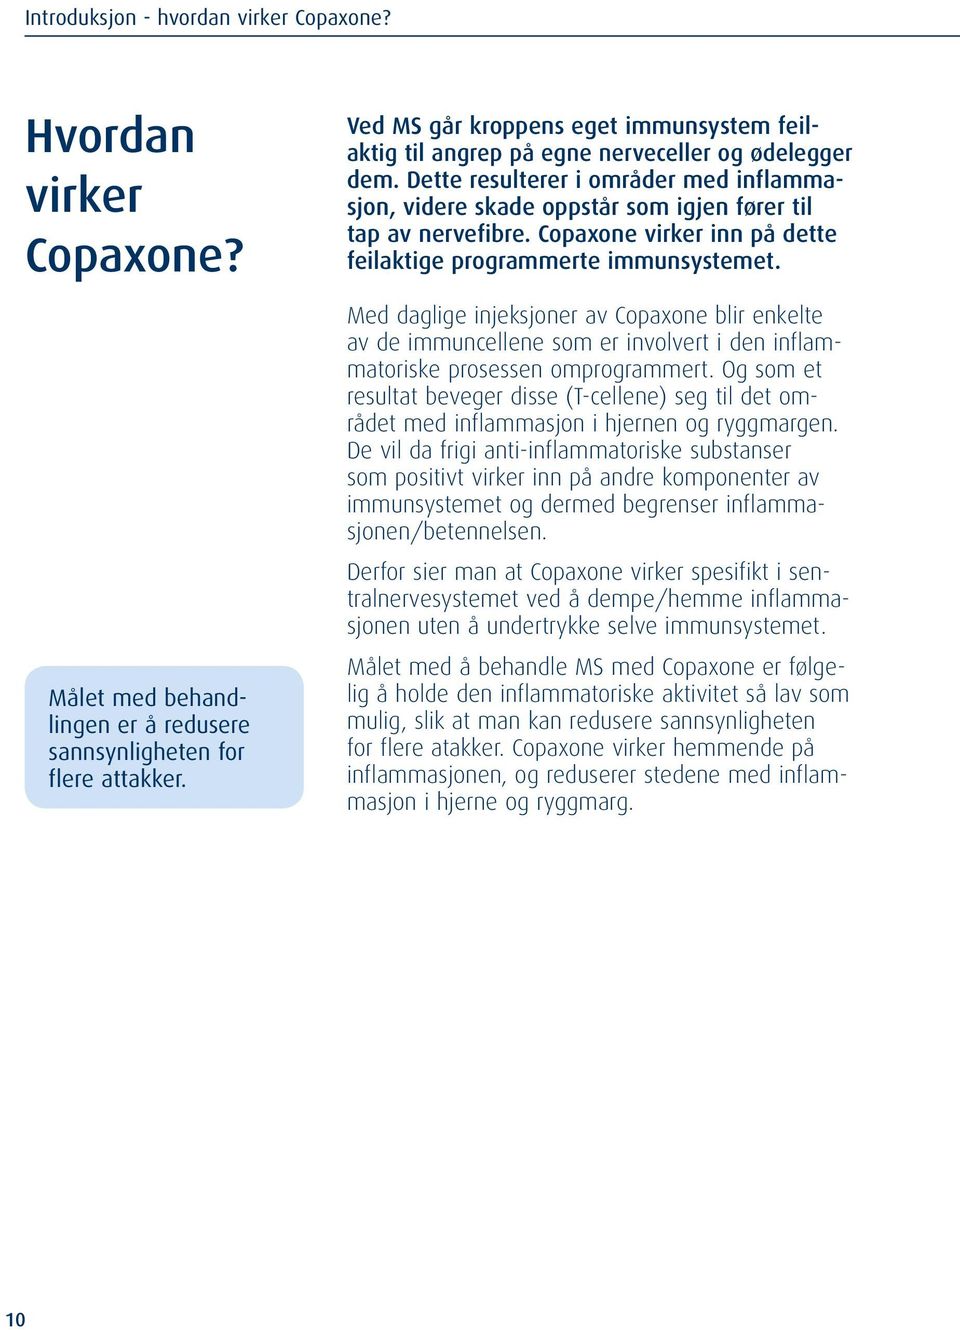 Copaxone virker inn på dette feilaktige programmerte immunsystemet. Med daglige injeksjoner av Copaxone blir enkelte av de immuncellene som er involvert i den inflammatoriske prosessen omprogrammert.